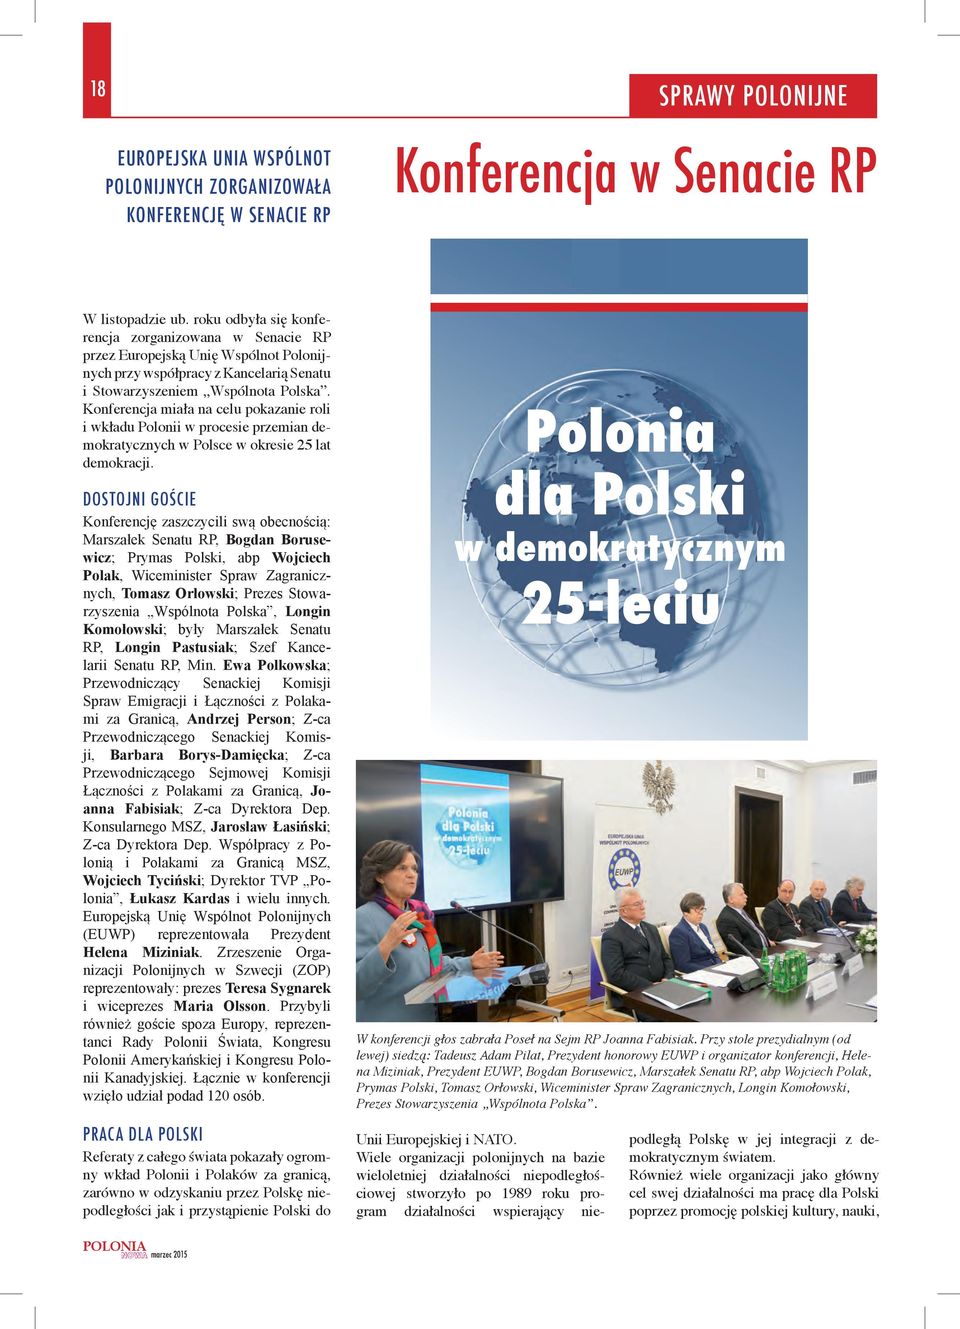 Koferecja miała a celu pokazaie roli i wkładu Poloii w procesie przemia demokratyczych w Polsce w okresie 25 lat demokracji.